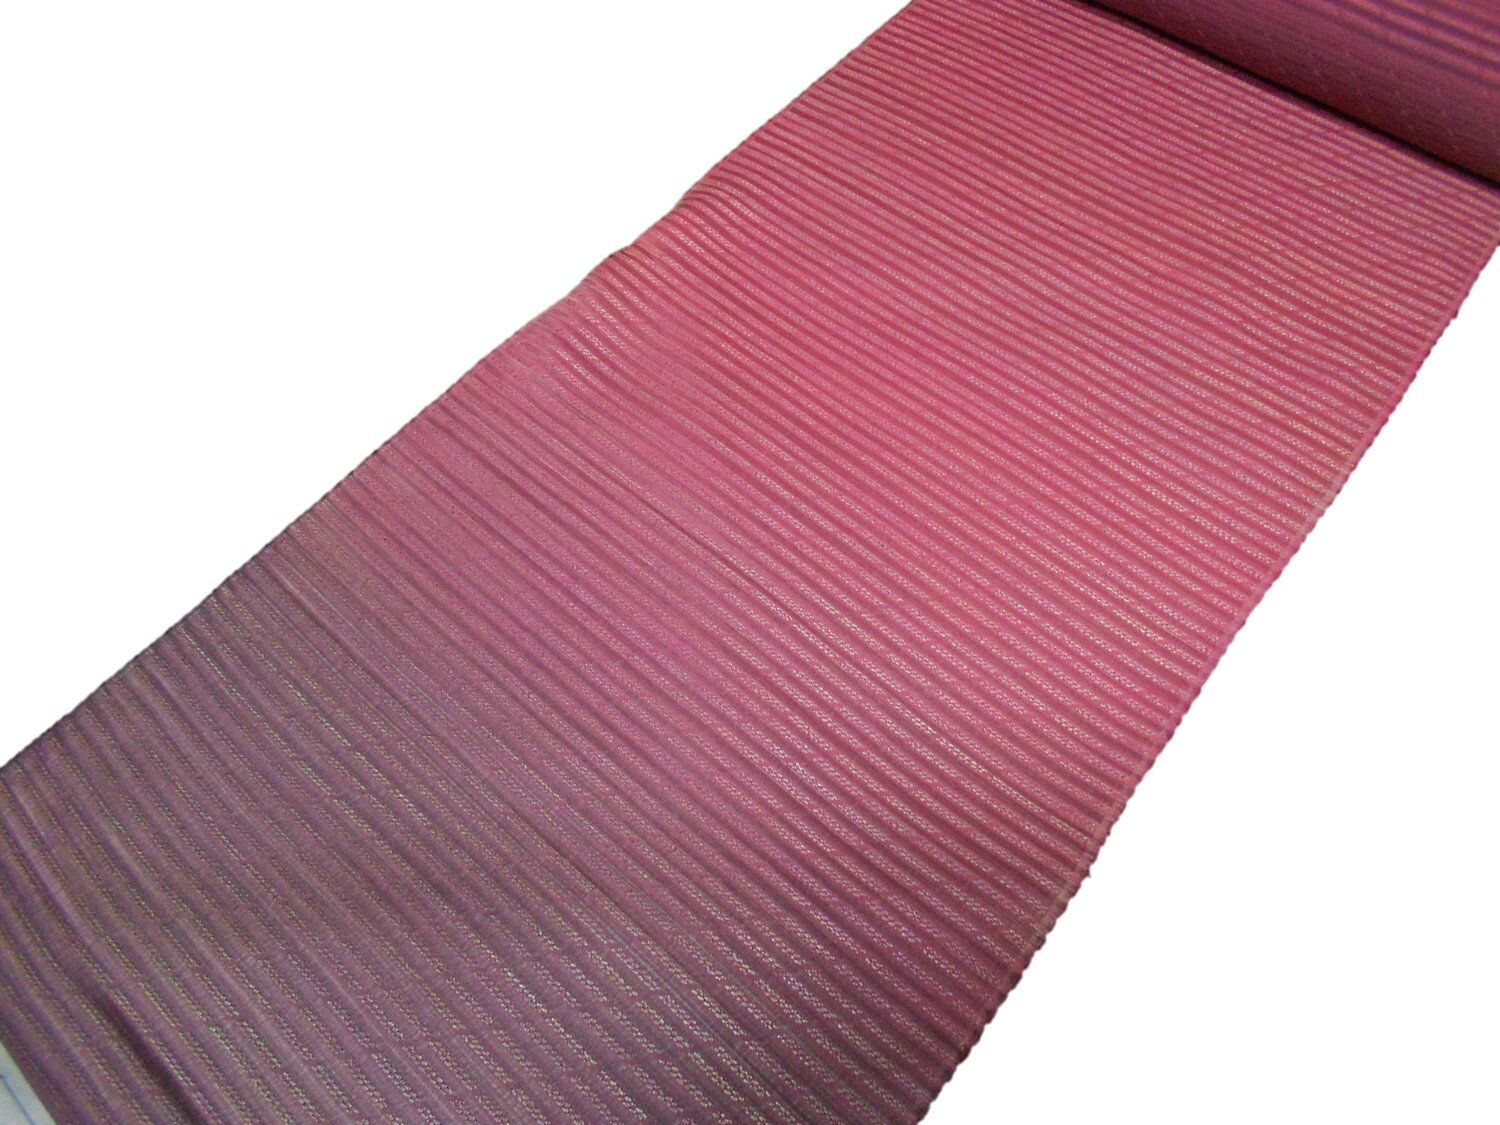 素材：絹100％　・色　紫地ボカシ染め　　　　寸法：巾　約37.5cm　　・長さ　約9m60cm※地厚な生地をボカシ染めした絵羽コート地です。反物ですので羽織・道行コート・道中着などにお仕立ていただけます。※モニター発色具合により実際の物と色が異なる場合がございます。お仕立（羽織・コート・海外手縫い仕立）をご希望の方はこちら羽織反物　　【正絹】　　【羽尺】　　【絵羽織】　　【絵羽コート地】　　【紫地】　　【スコッチガード】　　【日本製】　　【未仕立て】　　【送料無料】　　